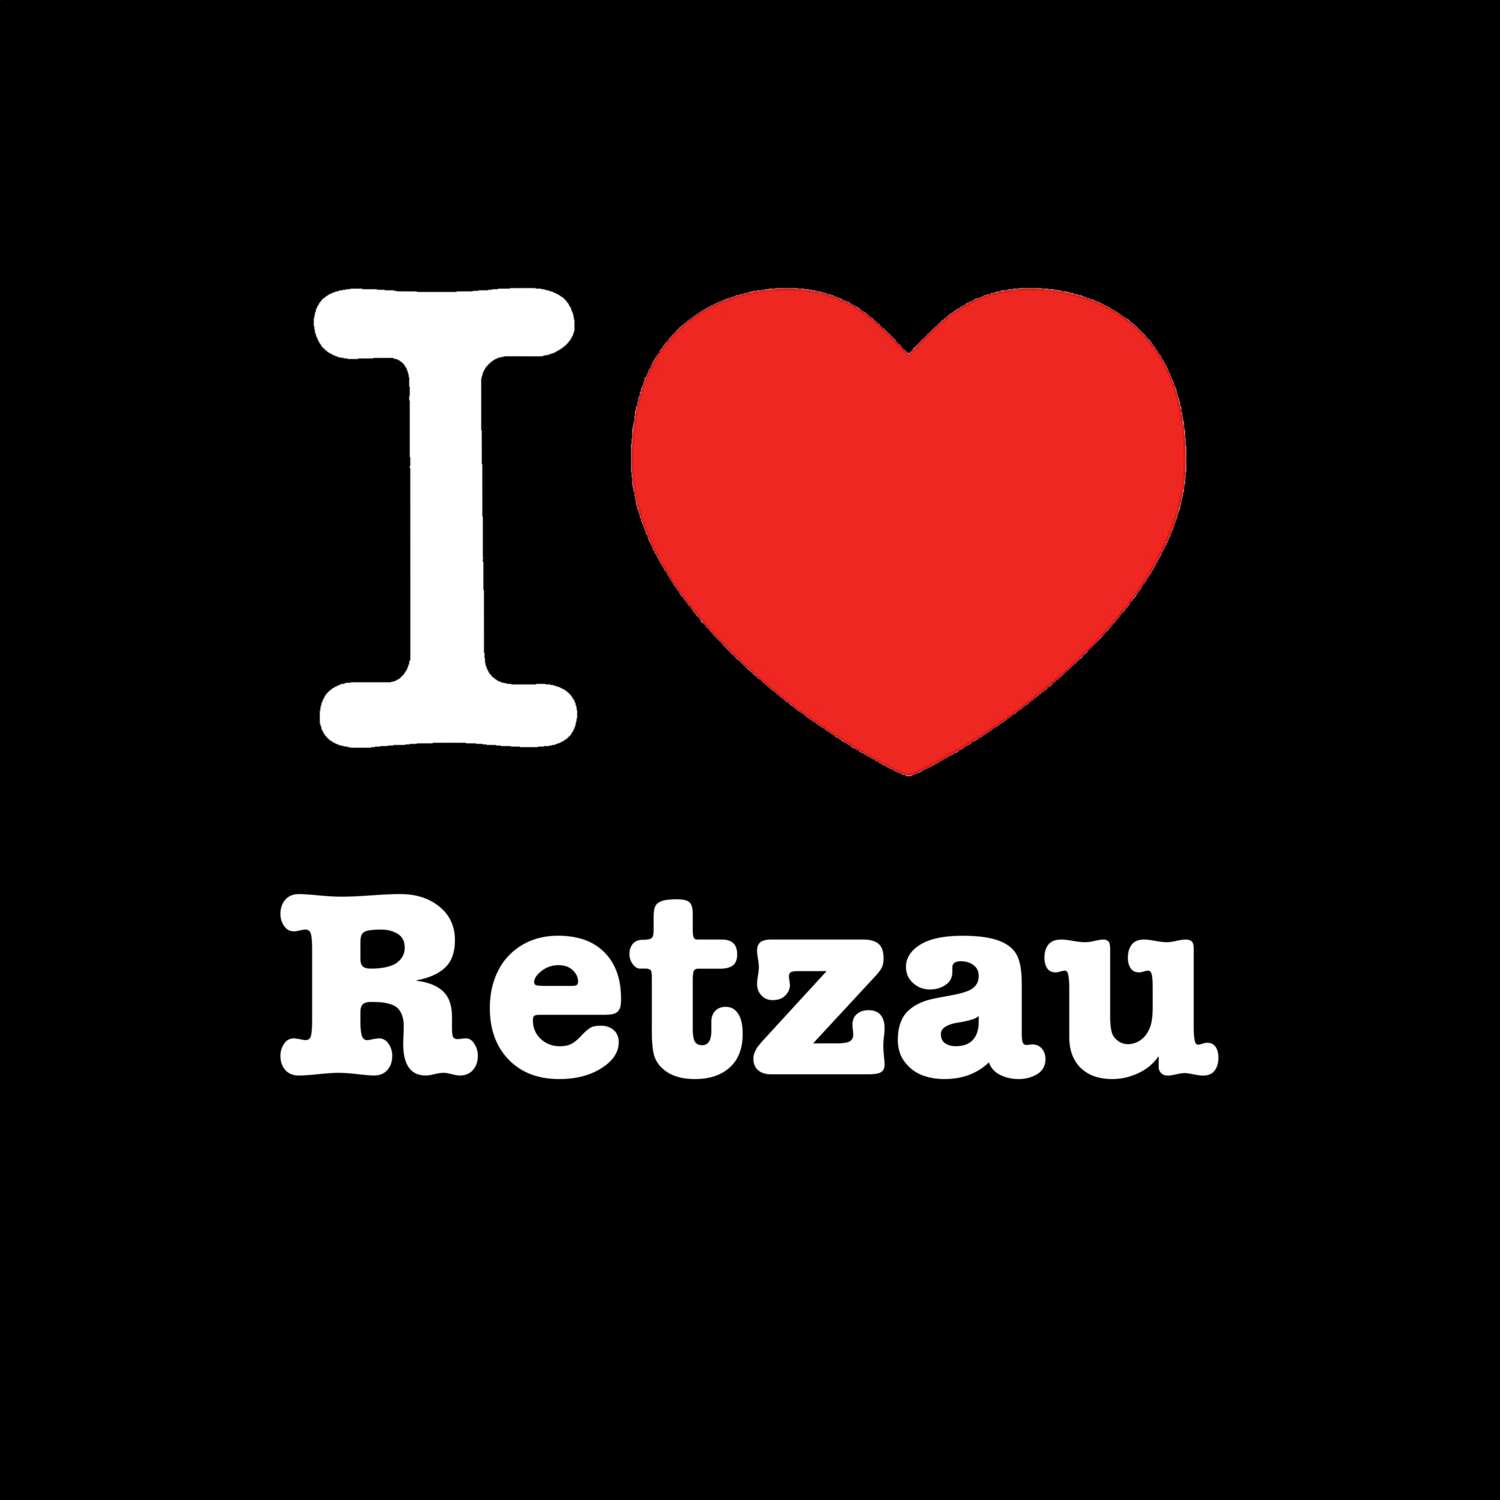 Retzau T-Shirt »I love«